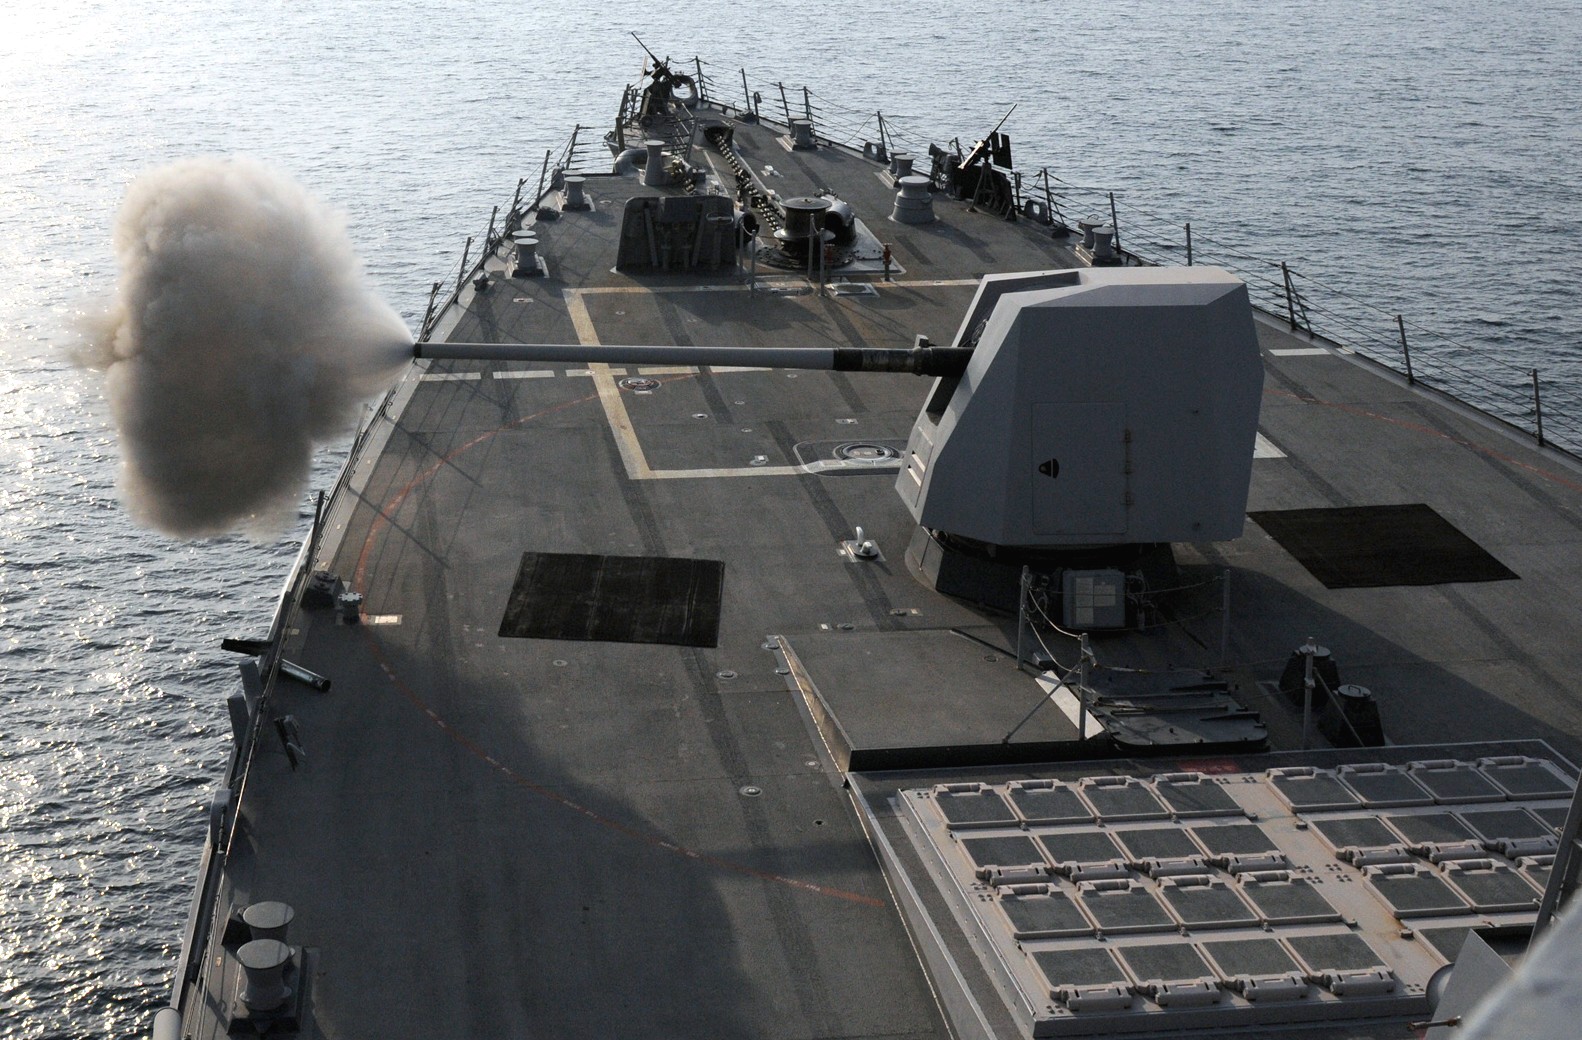 ddg-103 uss truxtun arleigh burke class guided missile destroyer aegis us navy arabian gulf 62